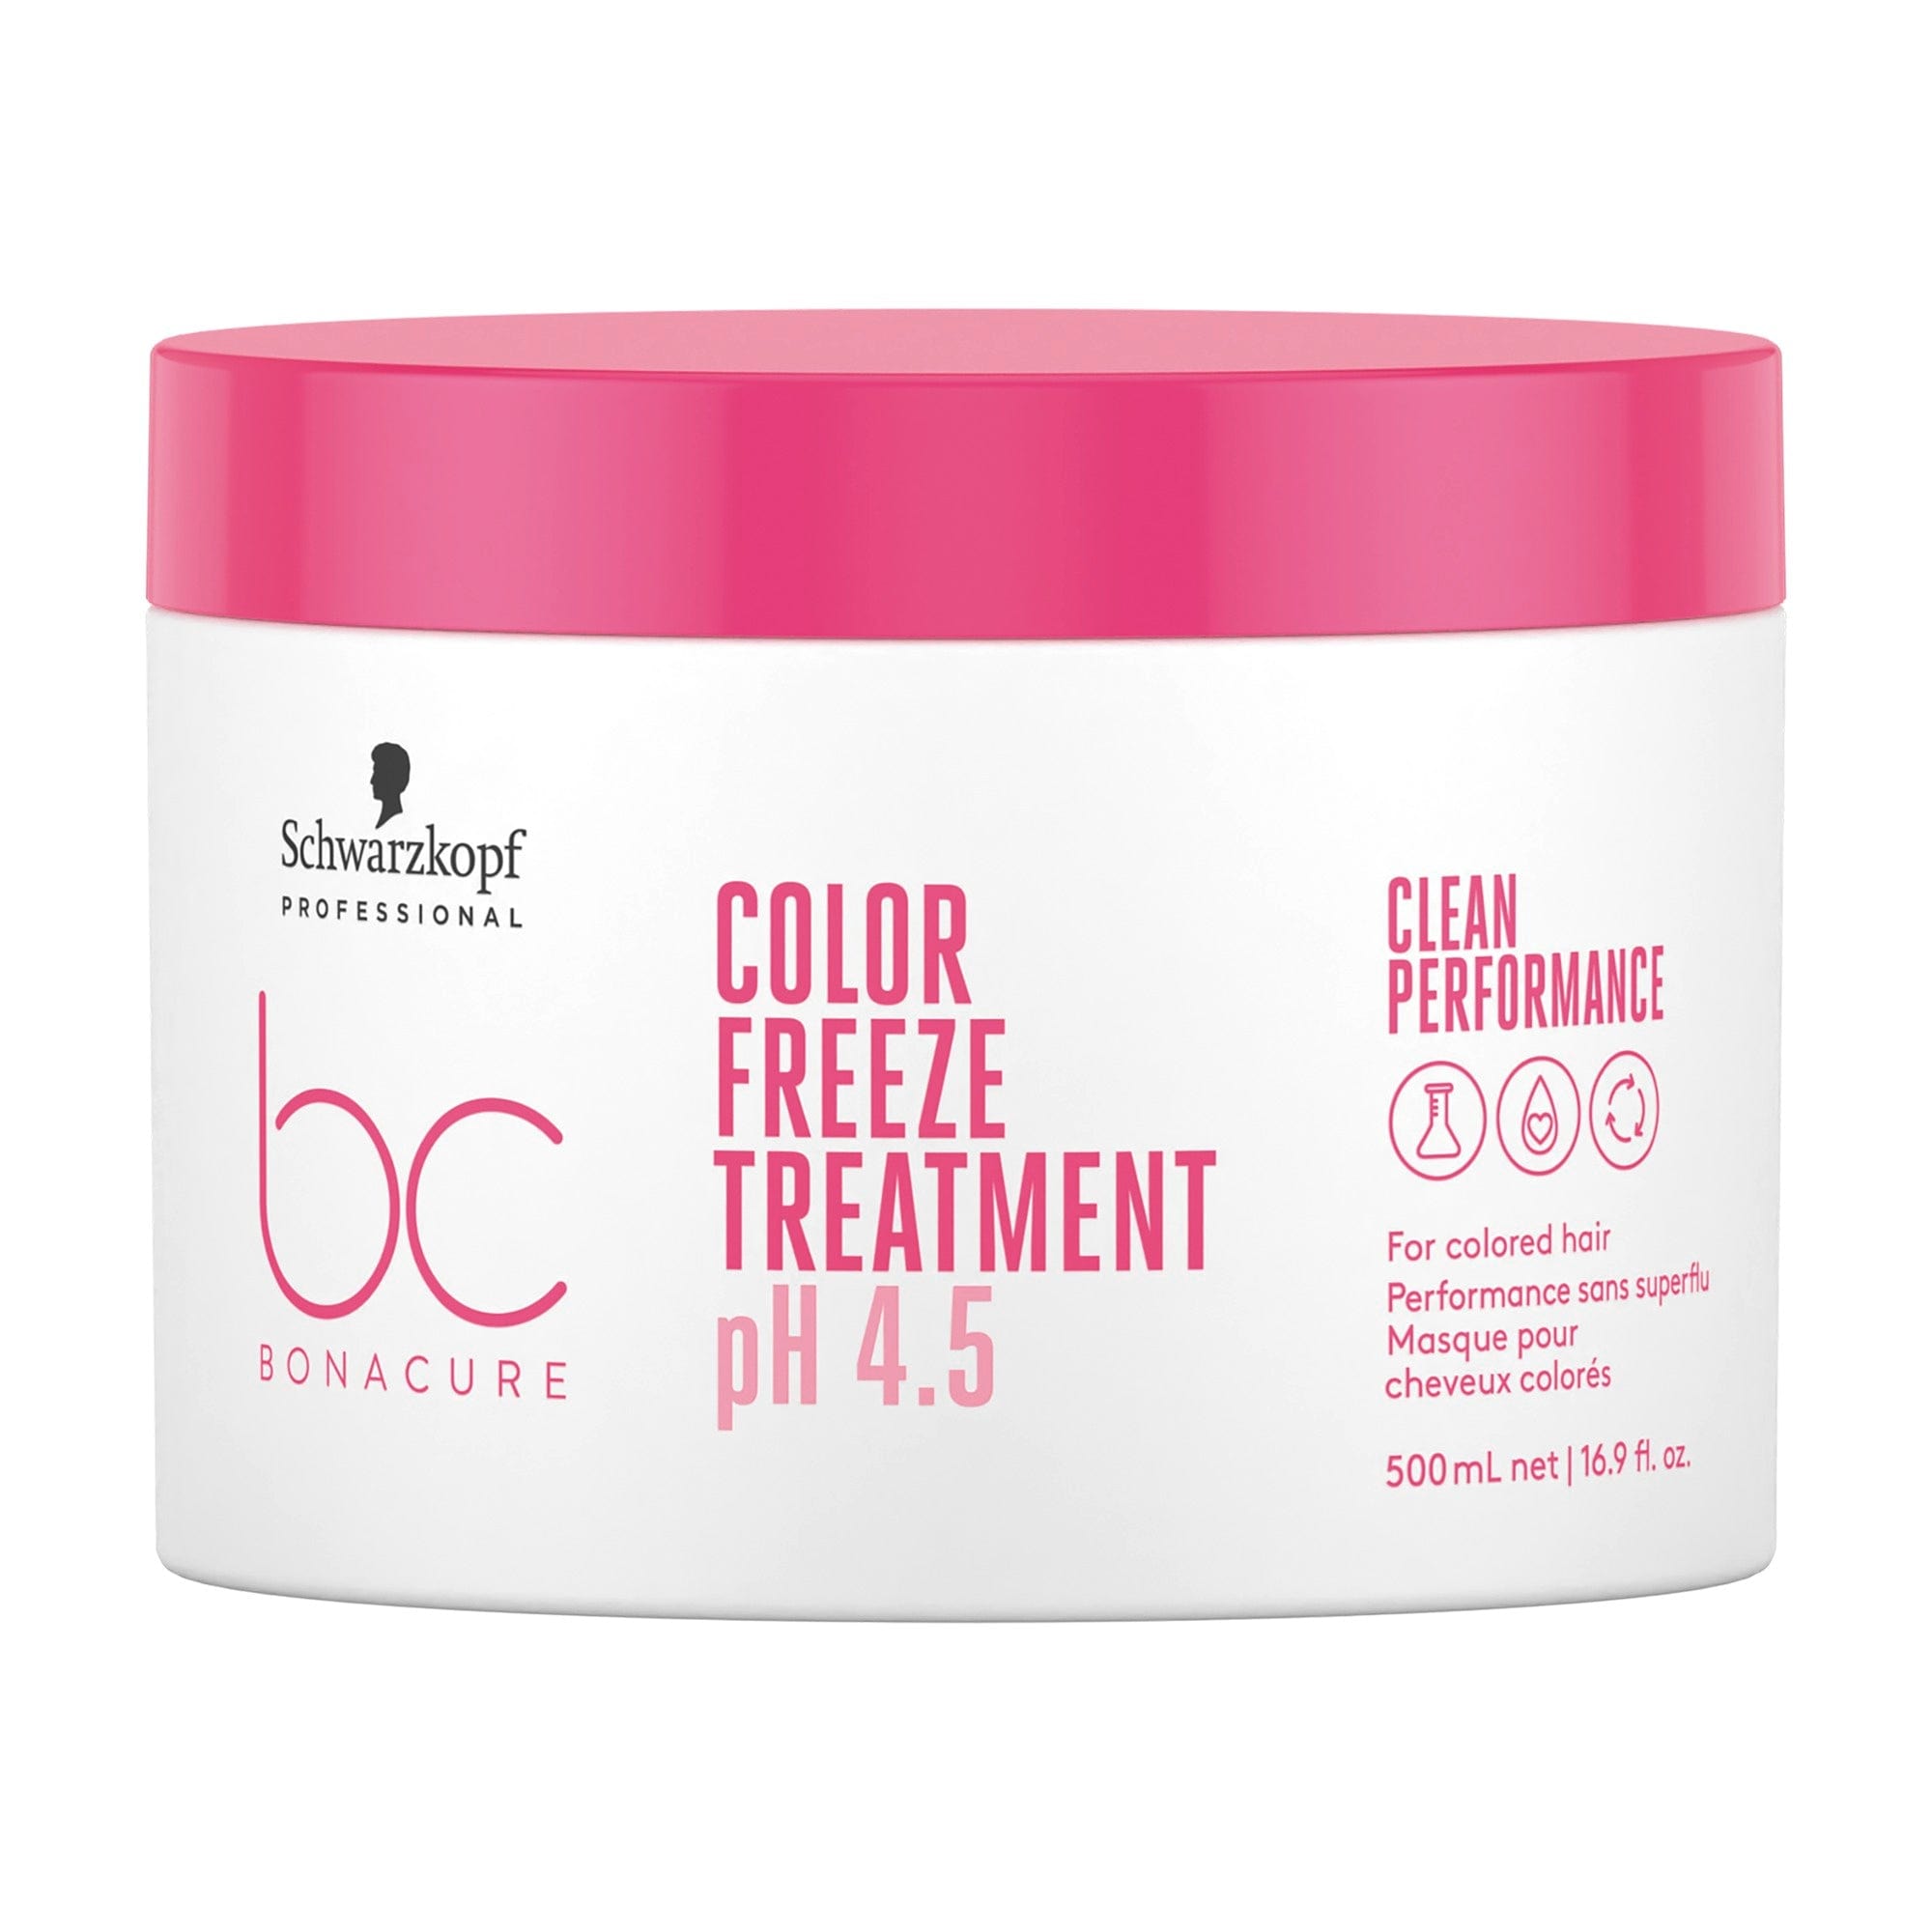 BC Bonacure NUEVO Bonacure Color Freeze Tratamiento 500ml Roberta Beauty Club